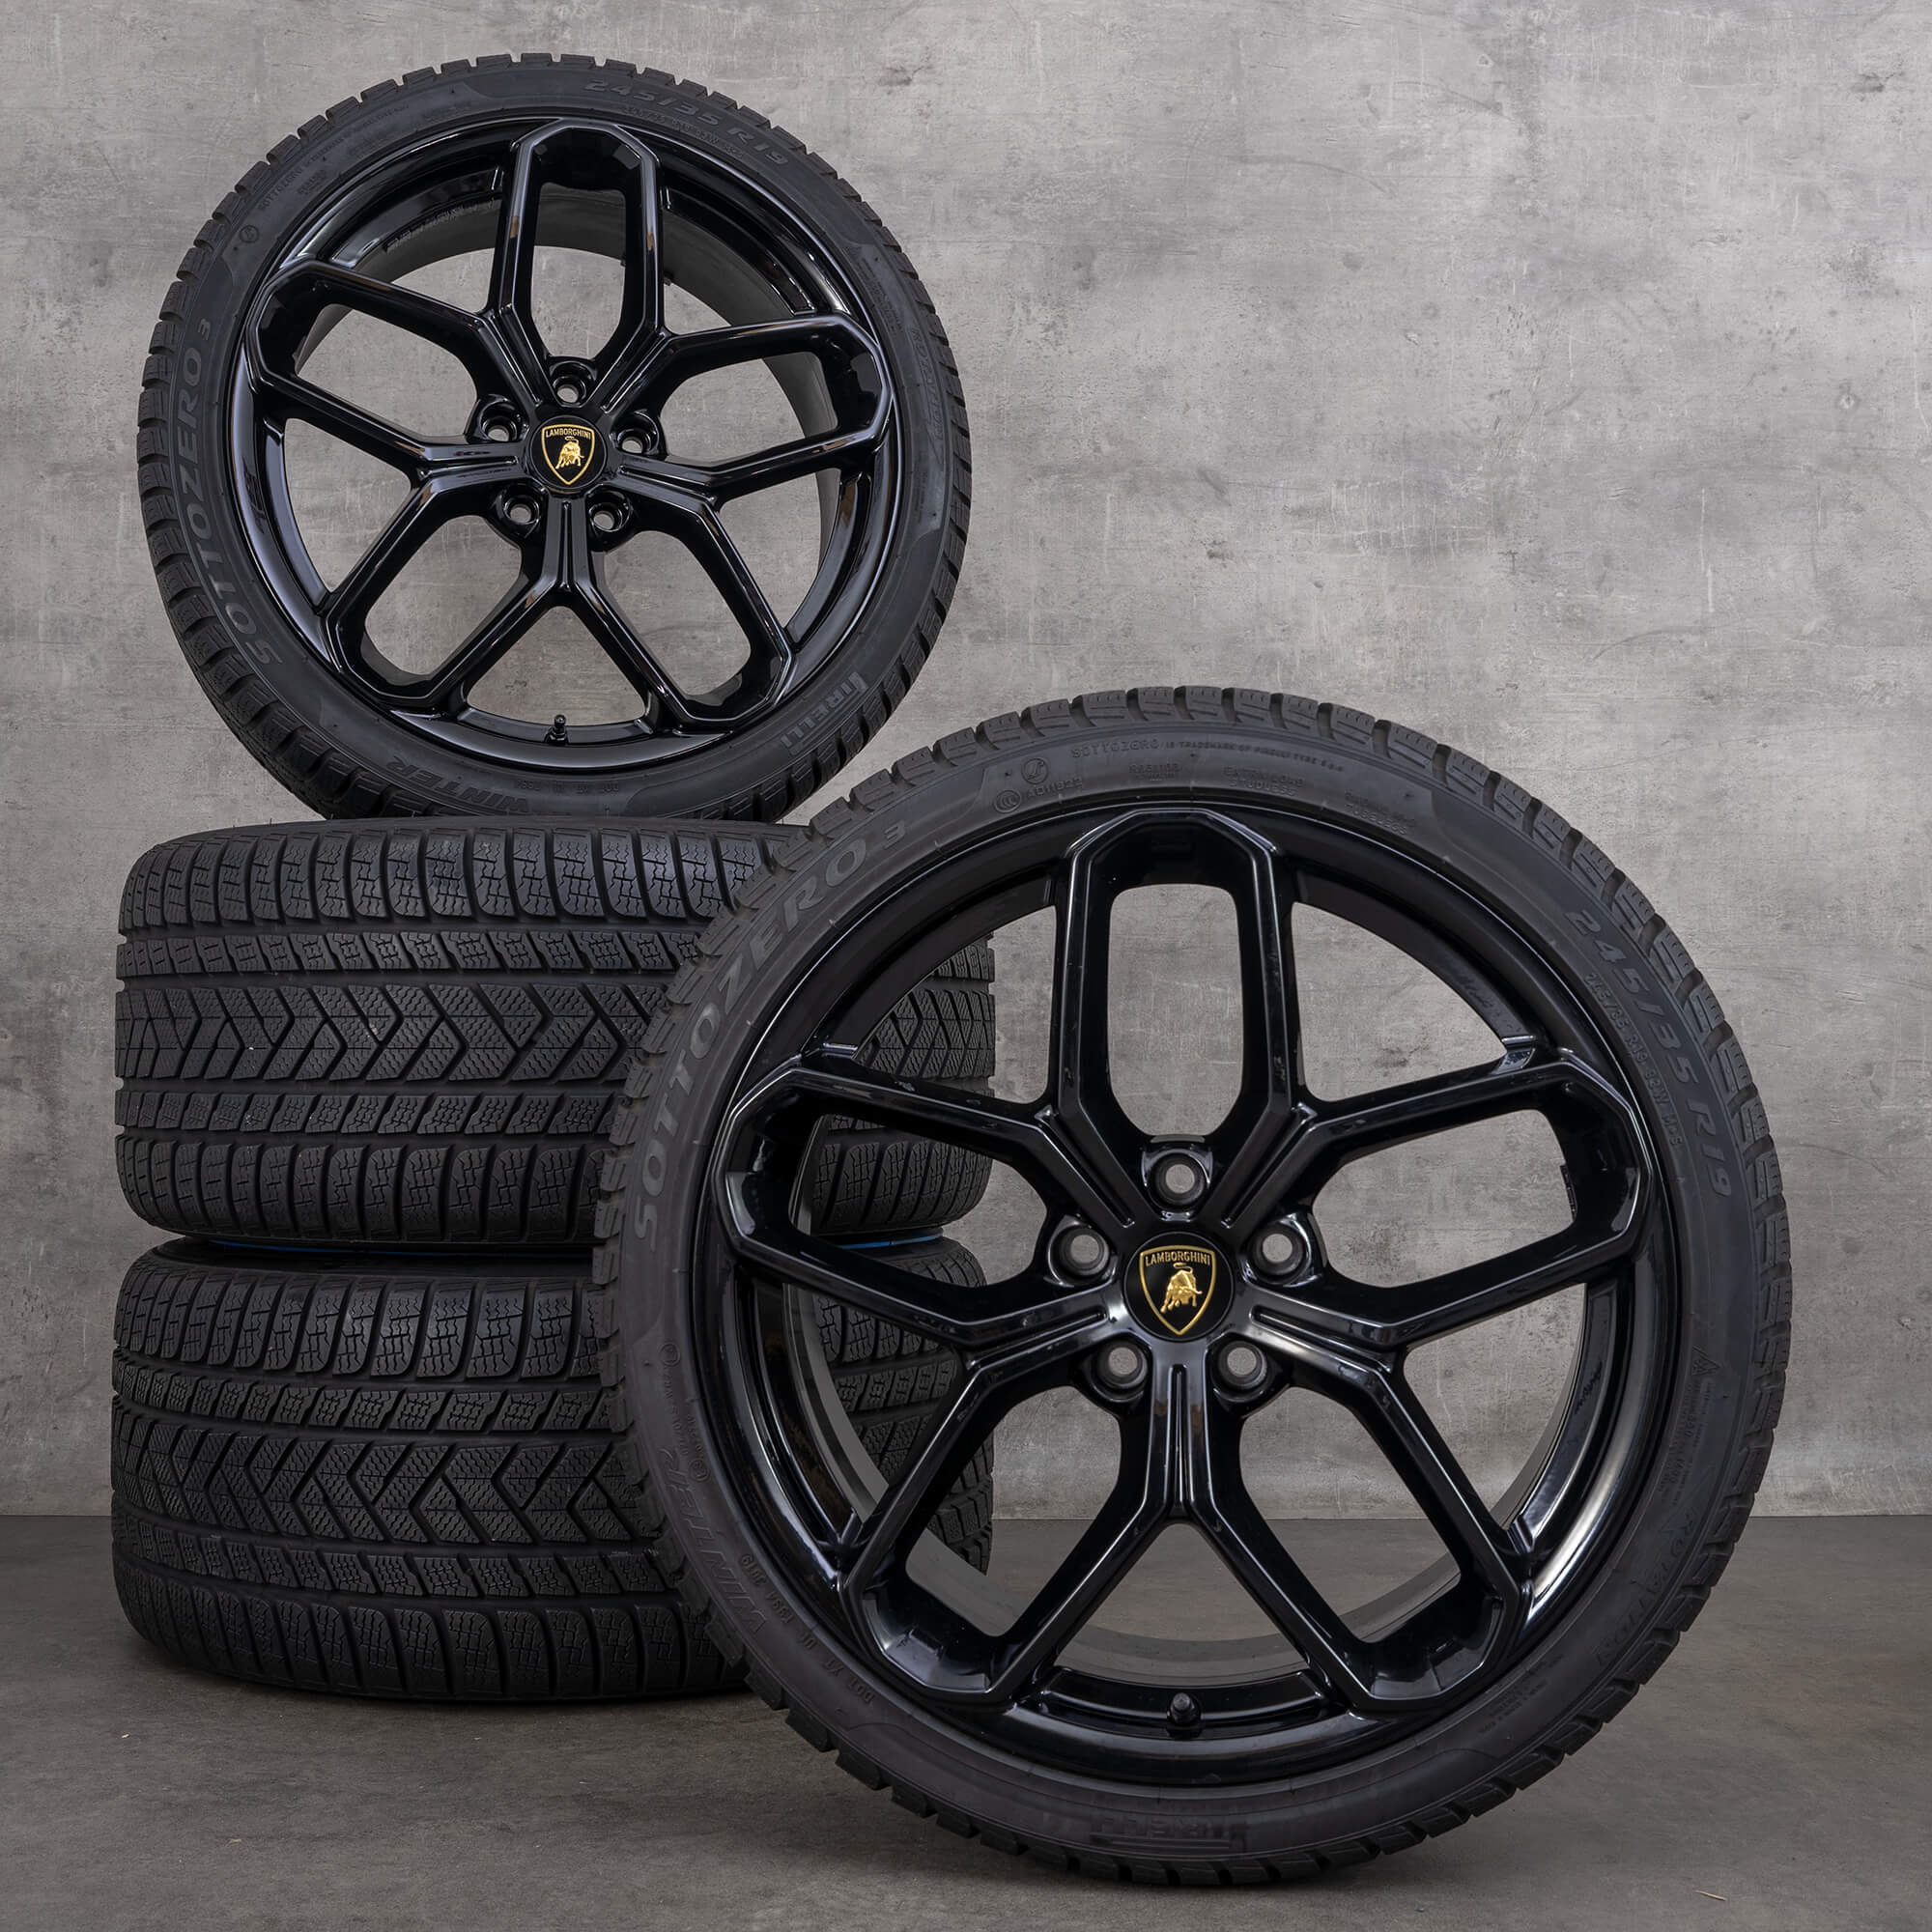 Quanto custa o pneu de uma Lamborghini? - Full Pneus